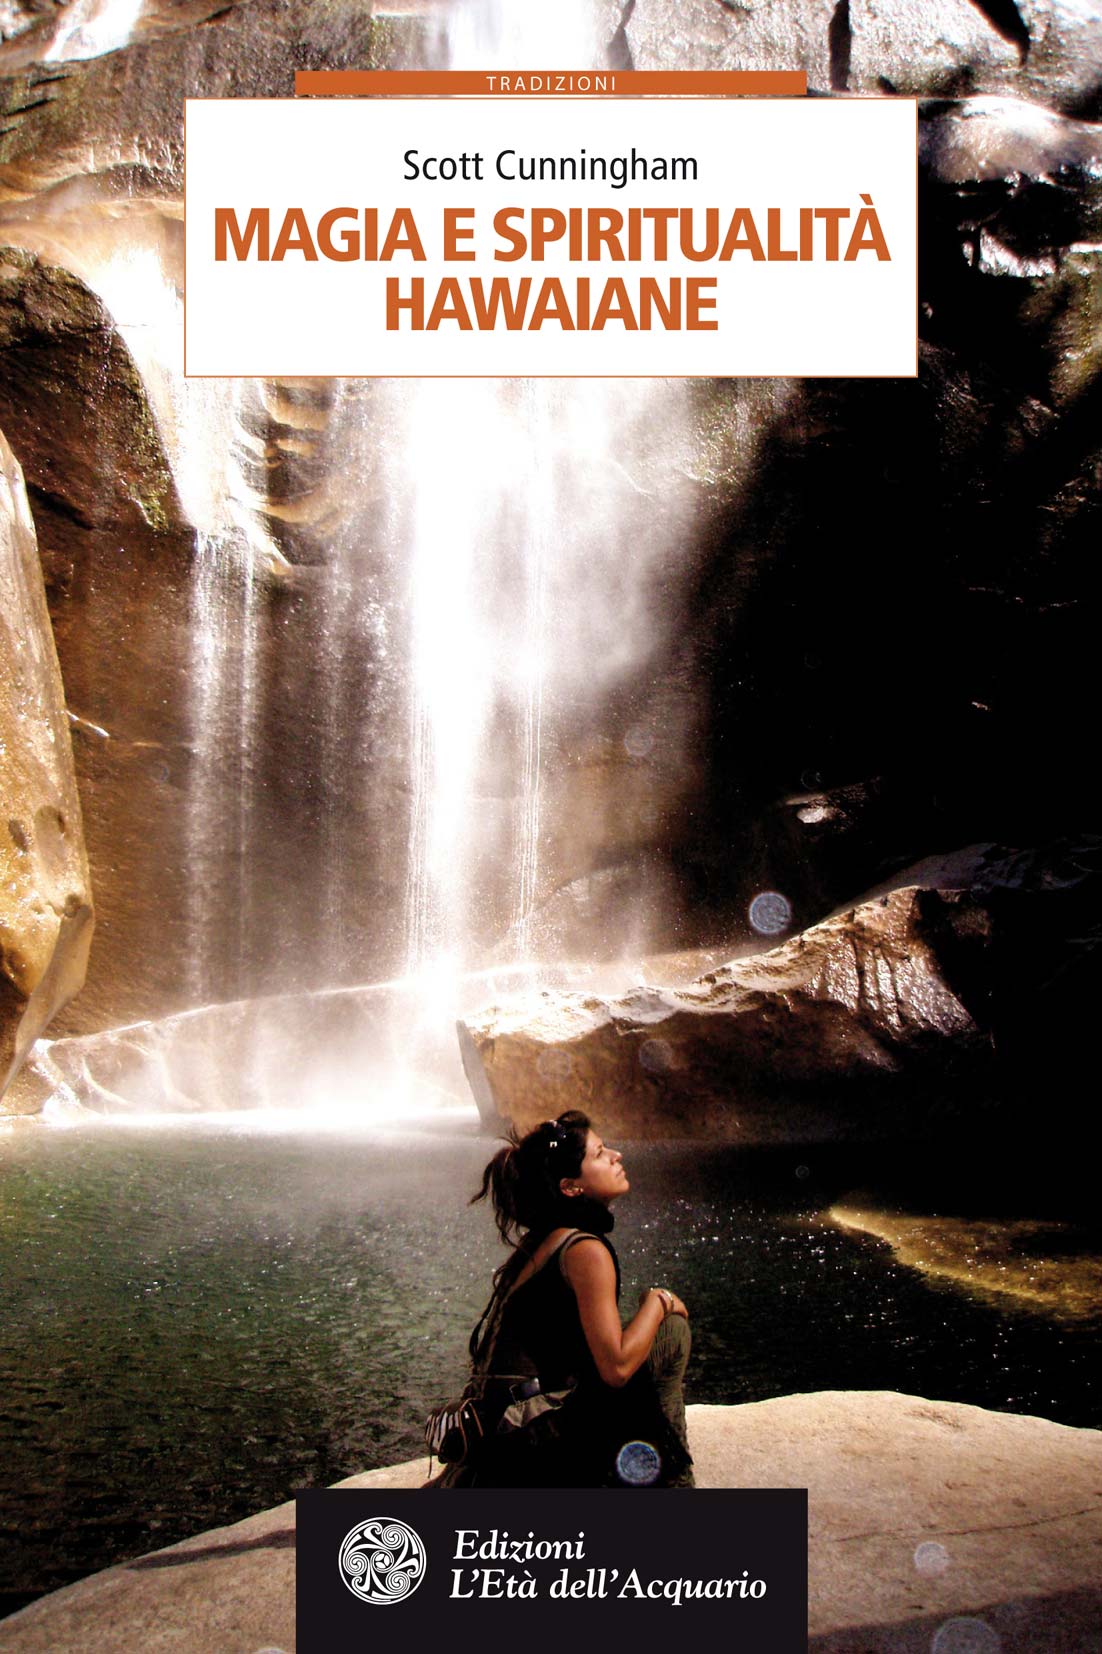 Libri Scott Cunningham - Magia E Spiritualita Hawaiane NUOVO SIGILLATO, EDIZIONE DEL 02/03/2017 SUBITO DISPONIBILE